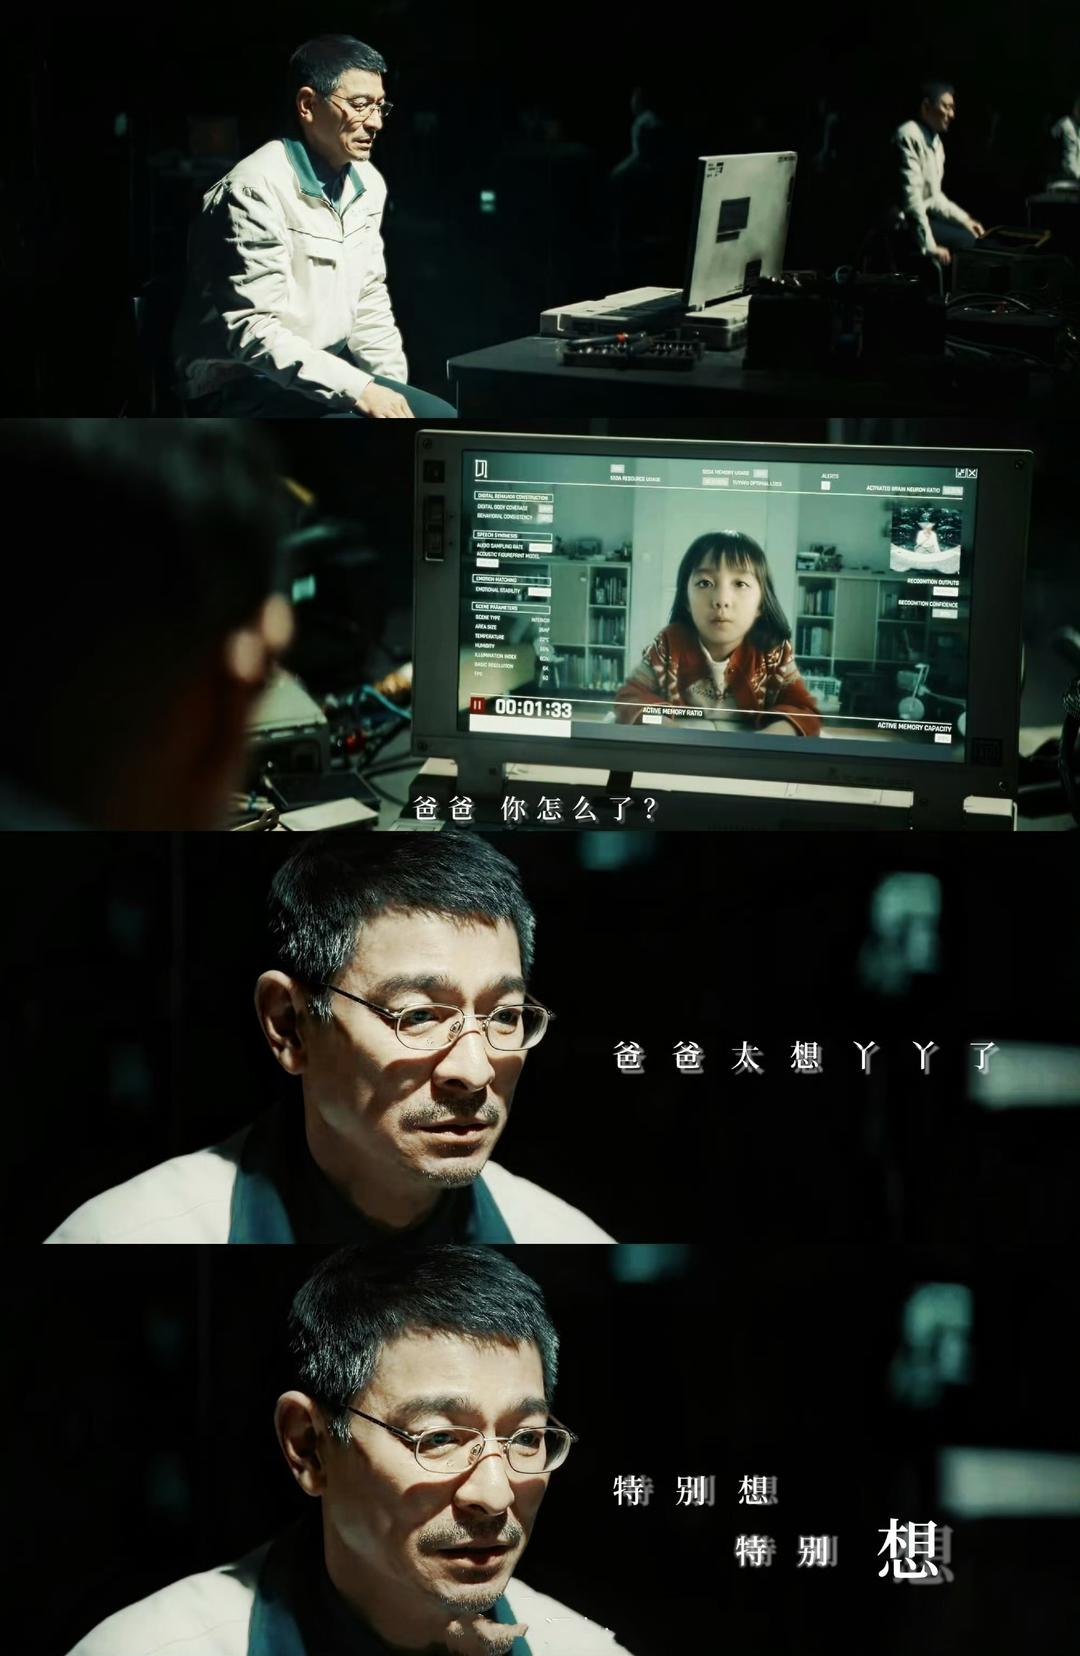 《流浪地球2》中刘德华饰演的图恒宇